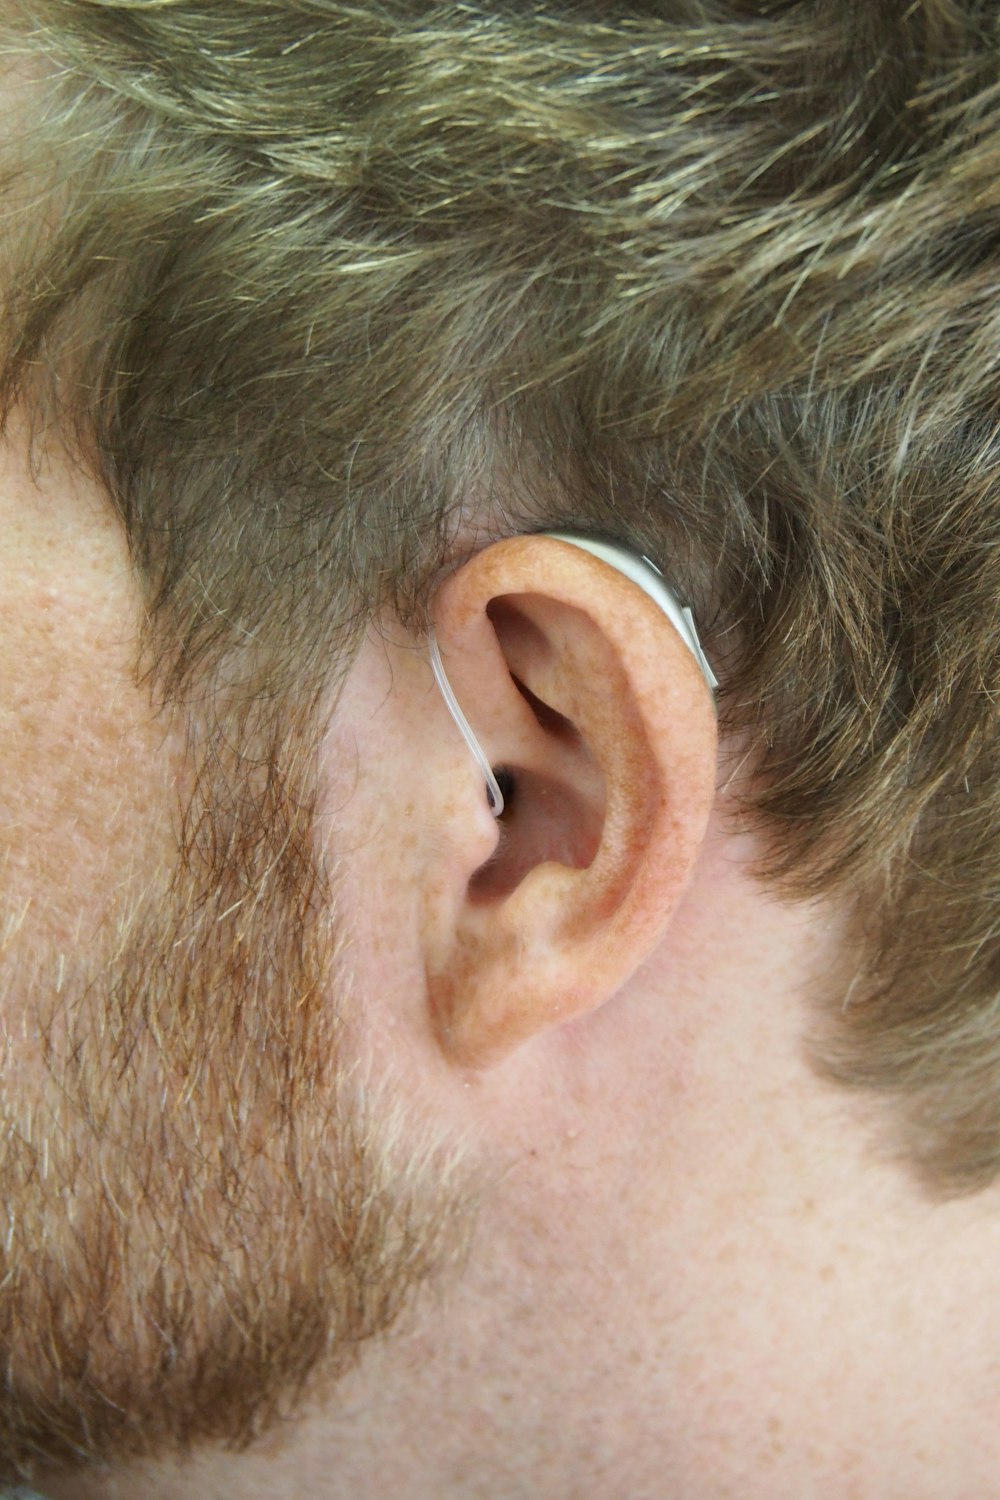 eine Nahaufnahme des Ohrs eines Mannes mit einem Ohrstöpsel